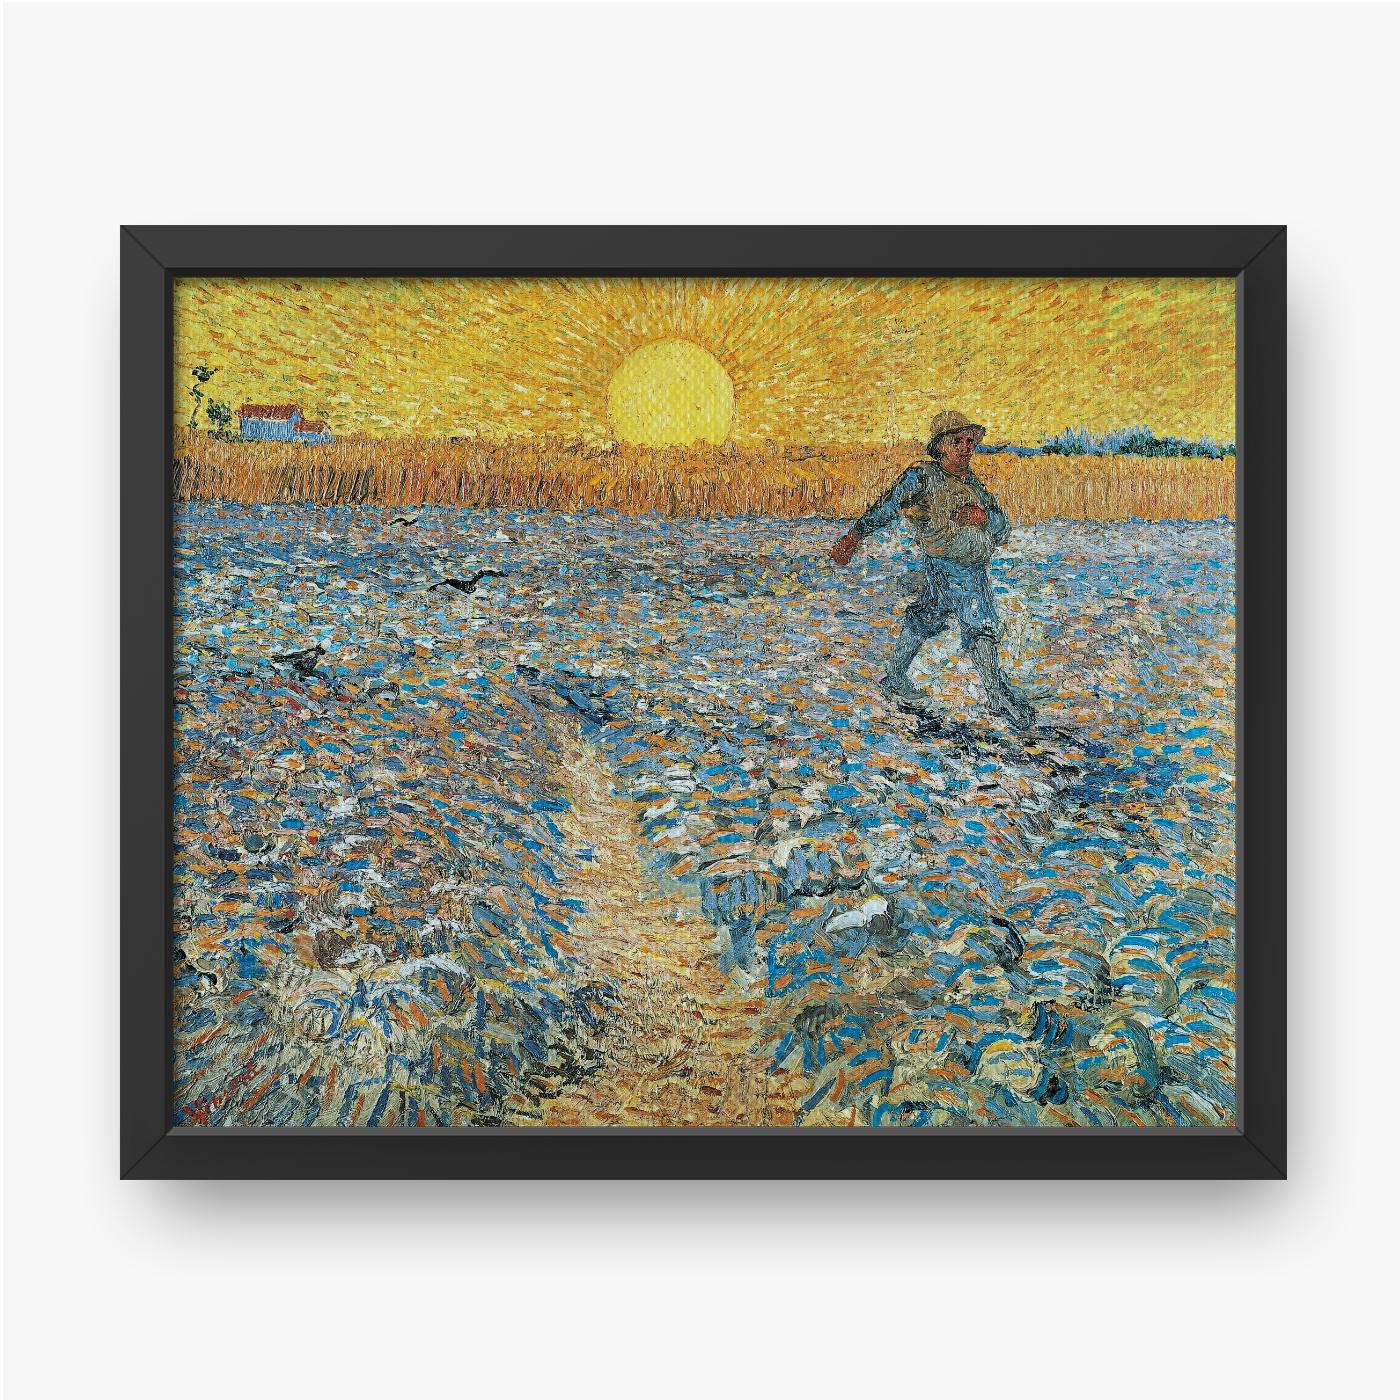 Ingelijste afbeelding op canvas Vincent van Gogh The Sower after Jean Francois Millet 1888